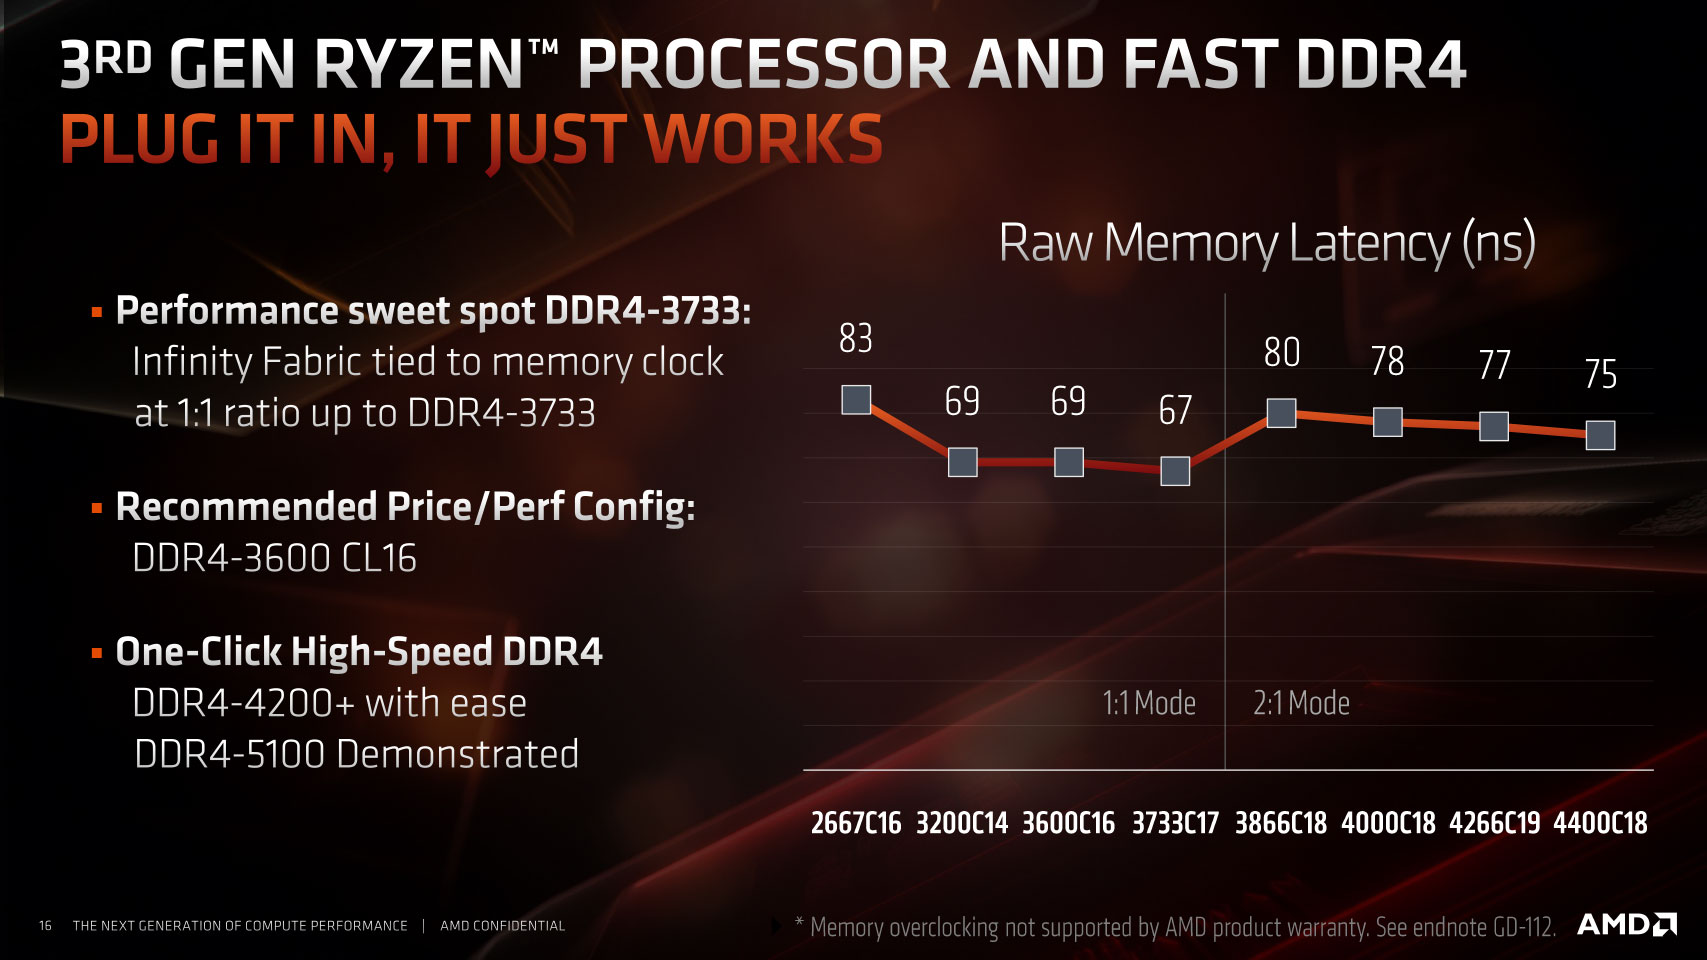 Which DDR4 Ram We Should Buy In 2023 ?, 2133 vs 2400 vs 2666 vs 3000 vs  3200 vs 3600 vs 4000 Mhz